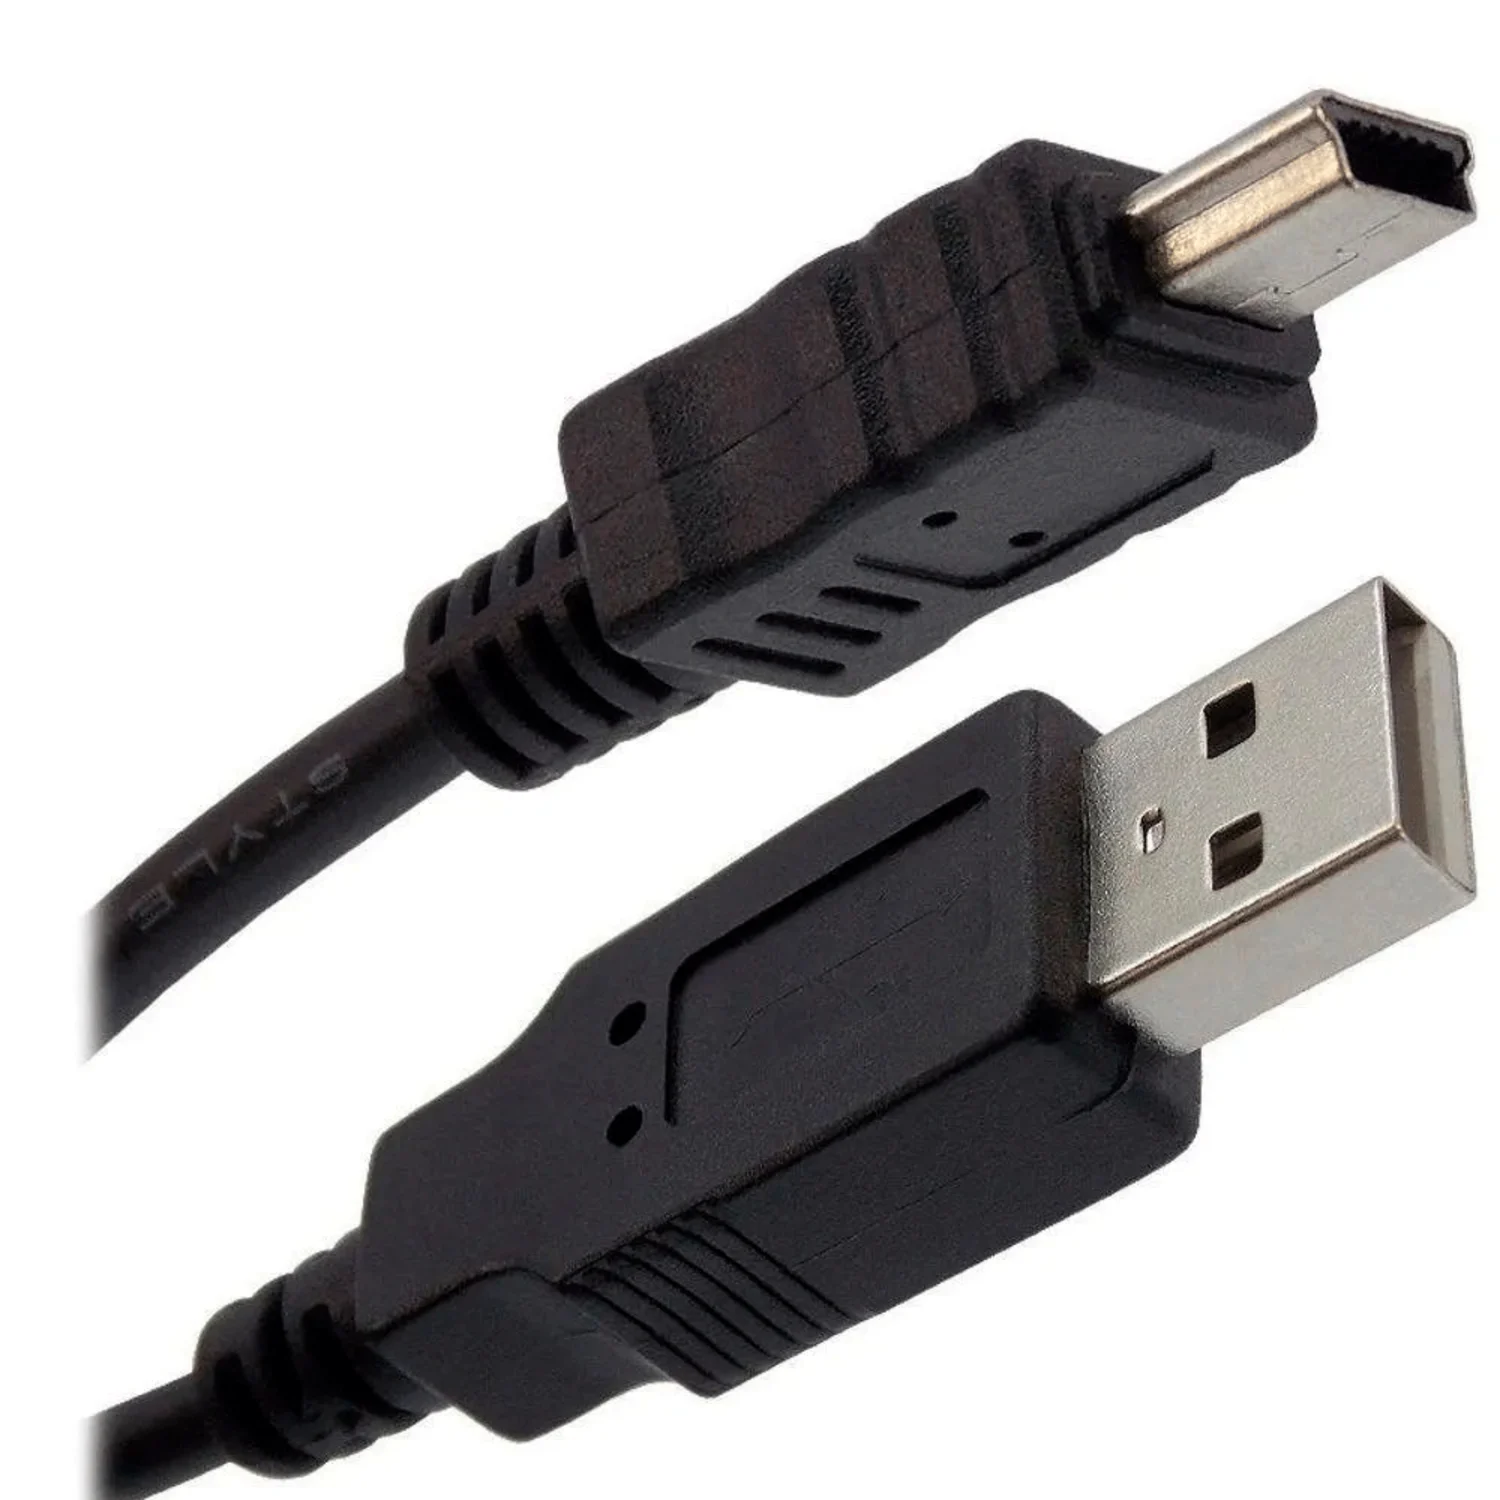 Cabo USB para controle PS3 / 1.8M - Preto